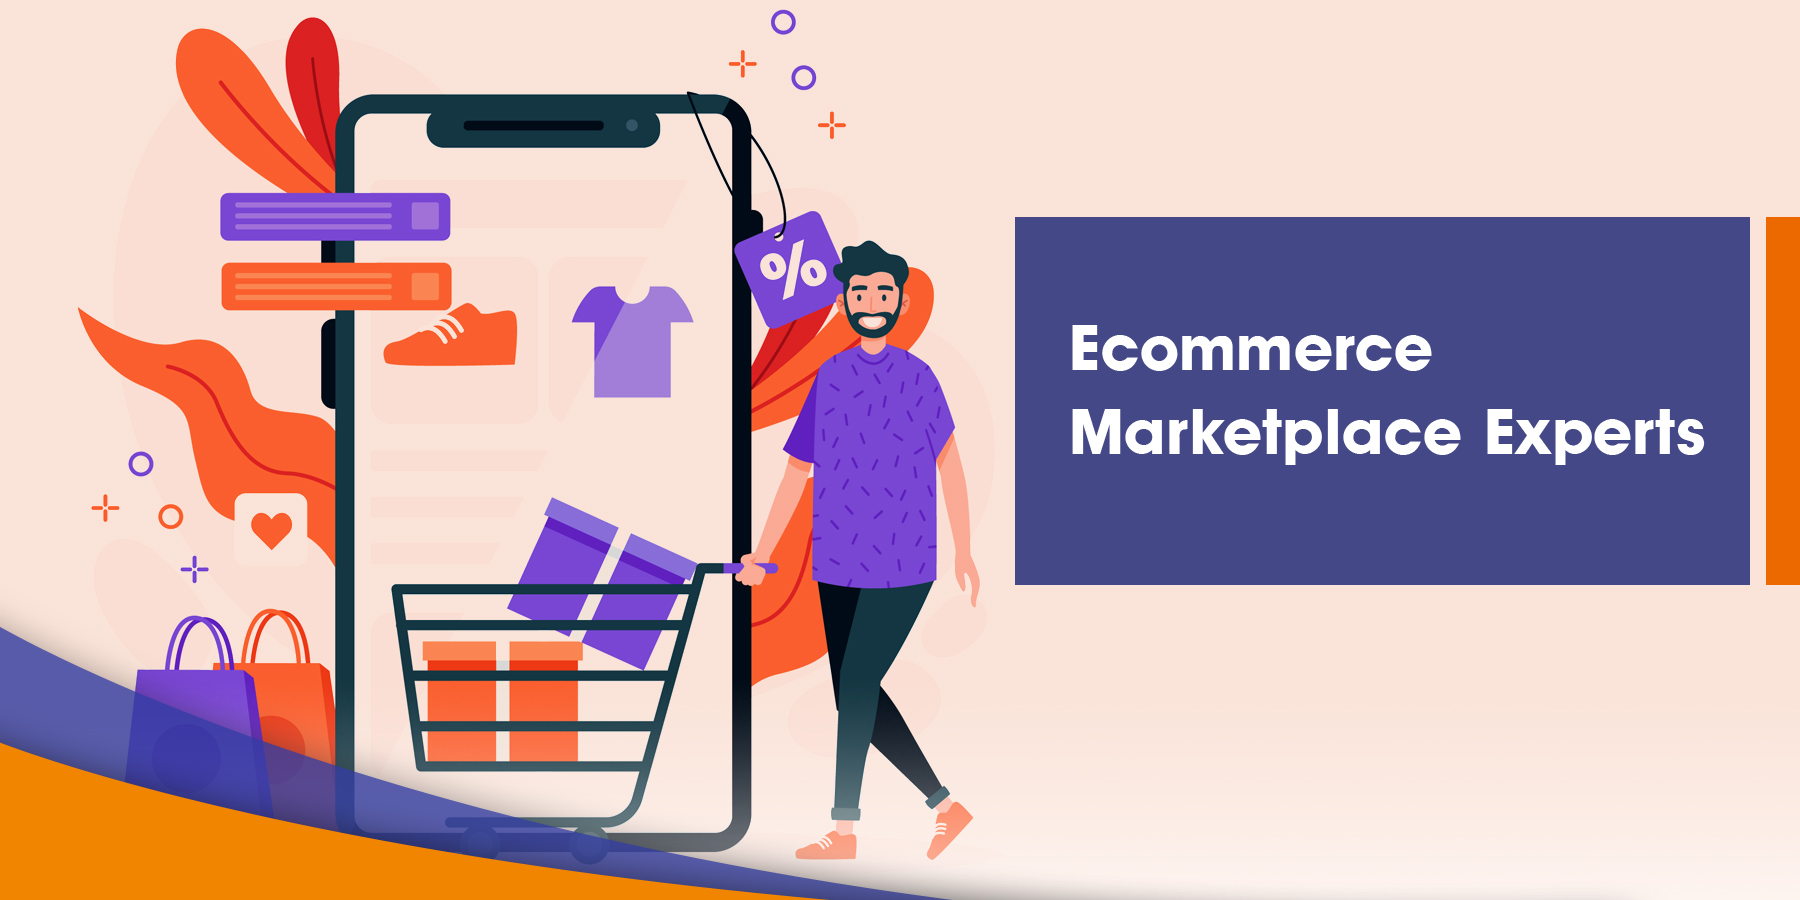 Ecommerce Marketplace Experts